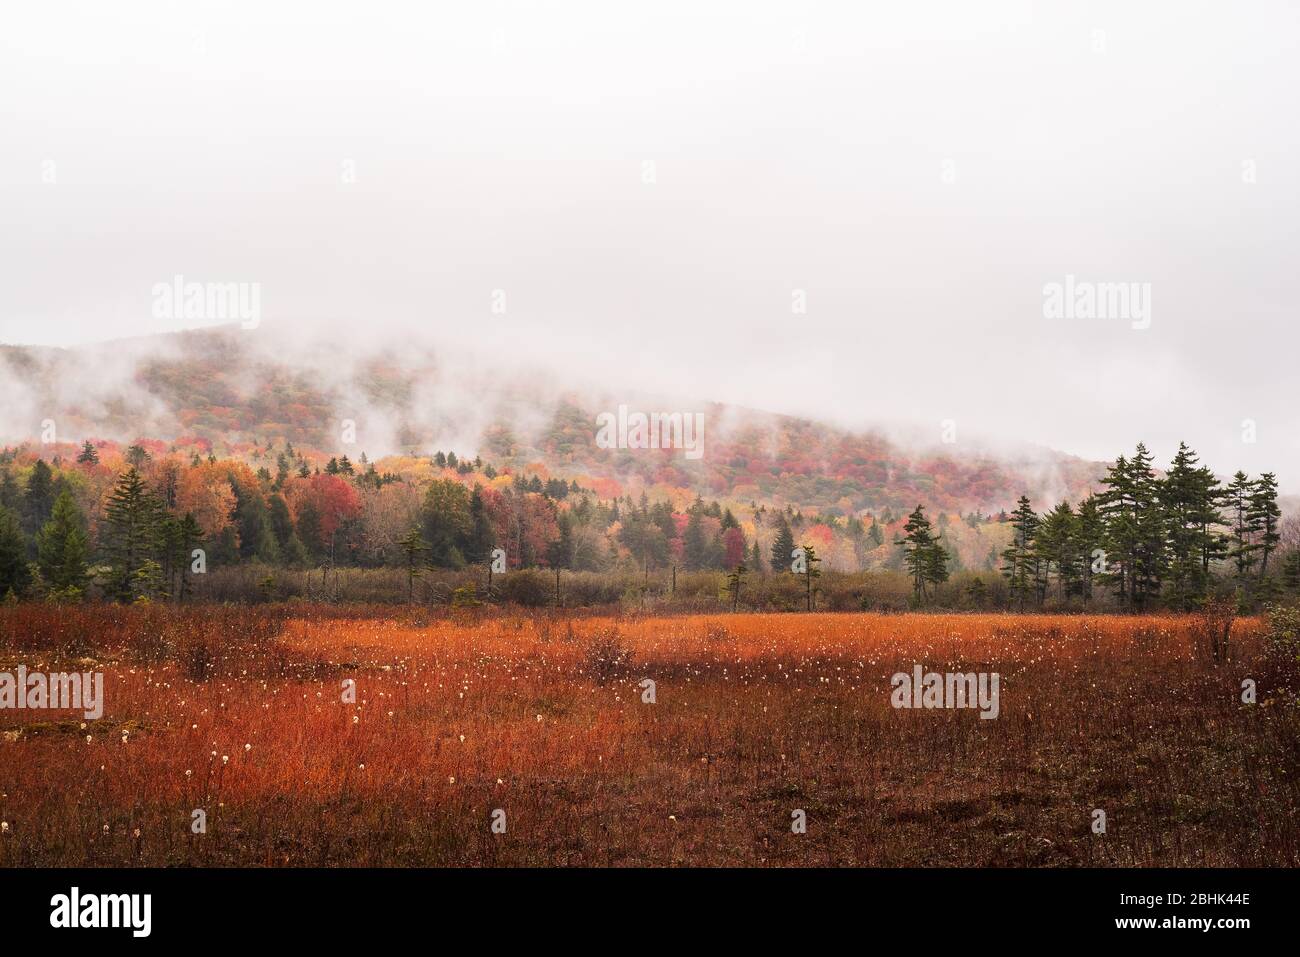 Le brouillard s'installe dans le paysage rouge brillant qui est les tourbières de Cranberry Glades en Virginie occidentale avec la forêt environnante peinte dans un tableau Banque D'Images